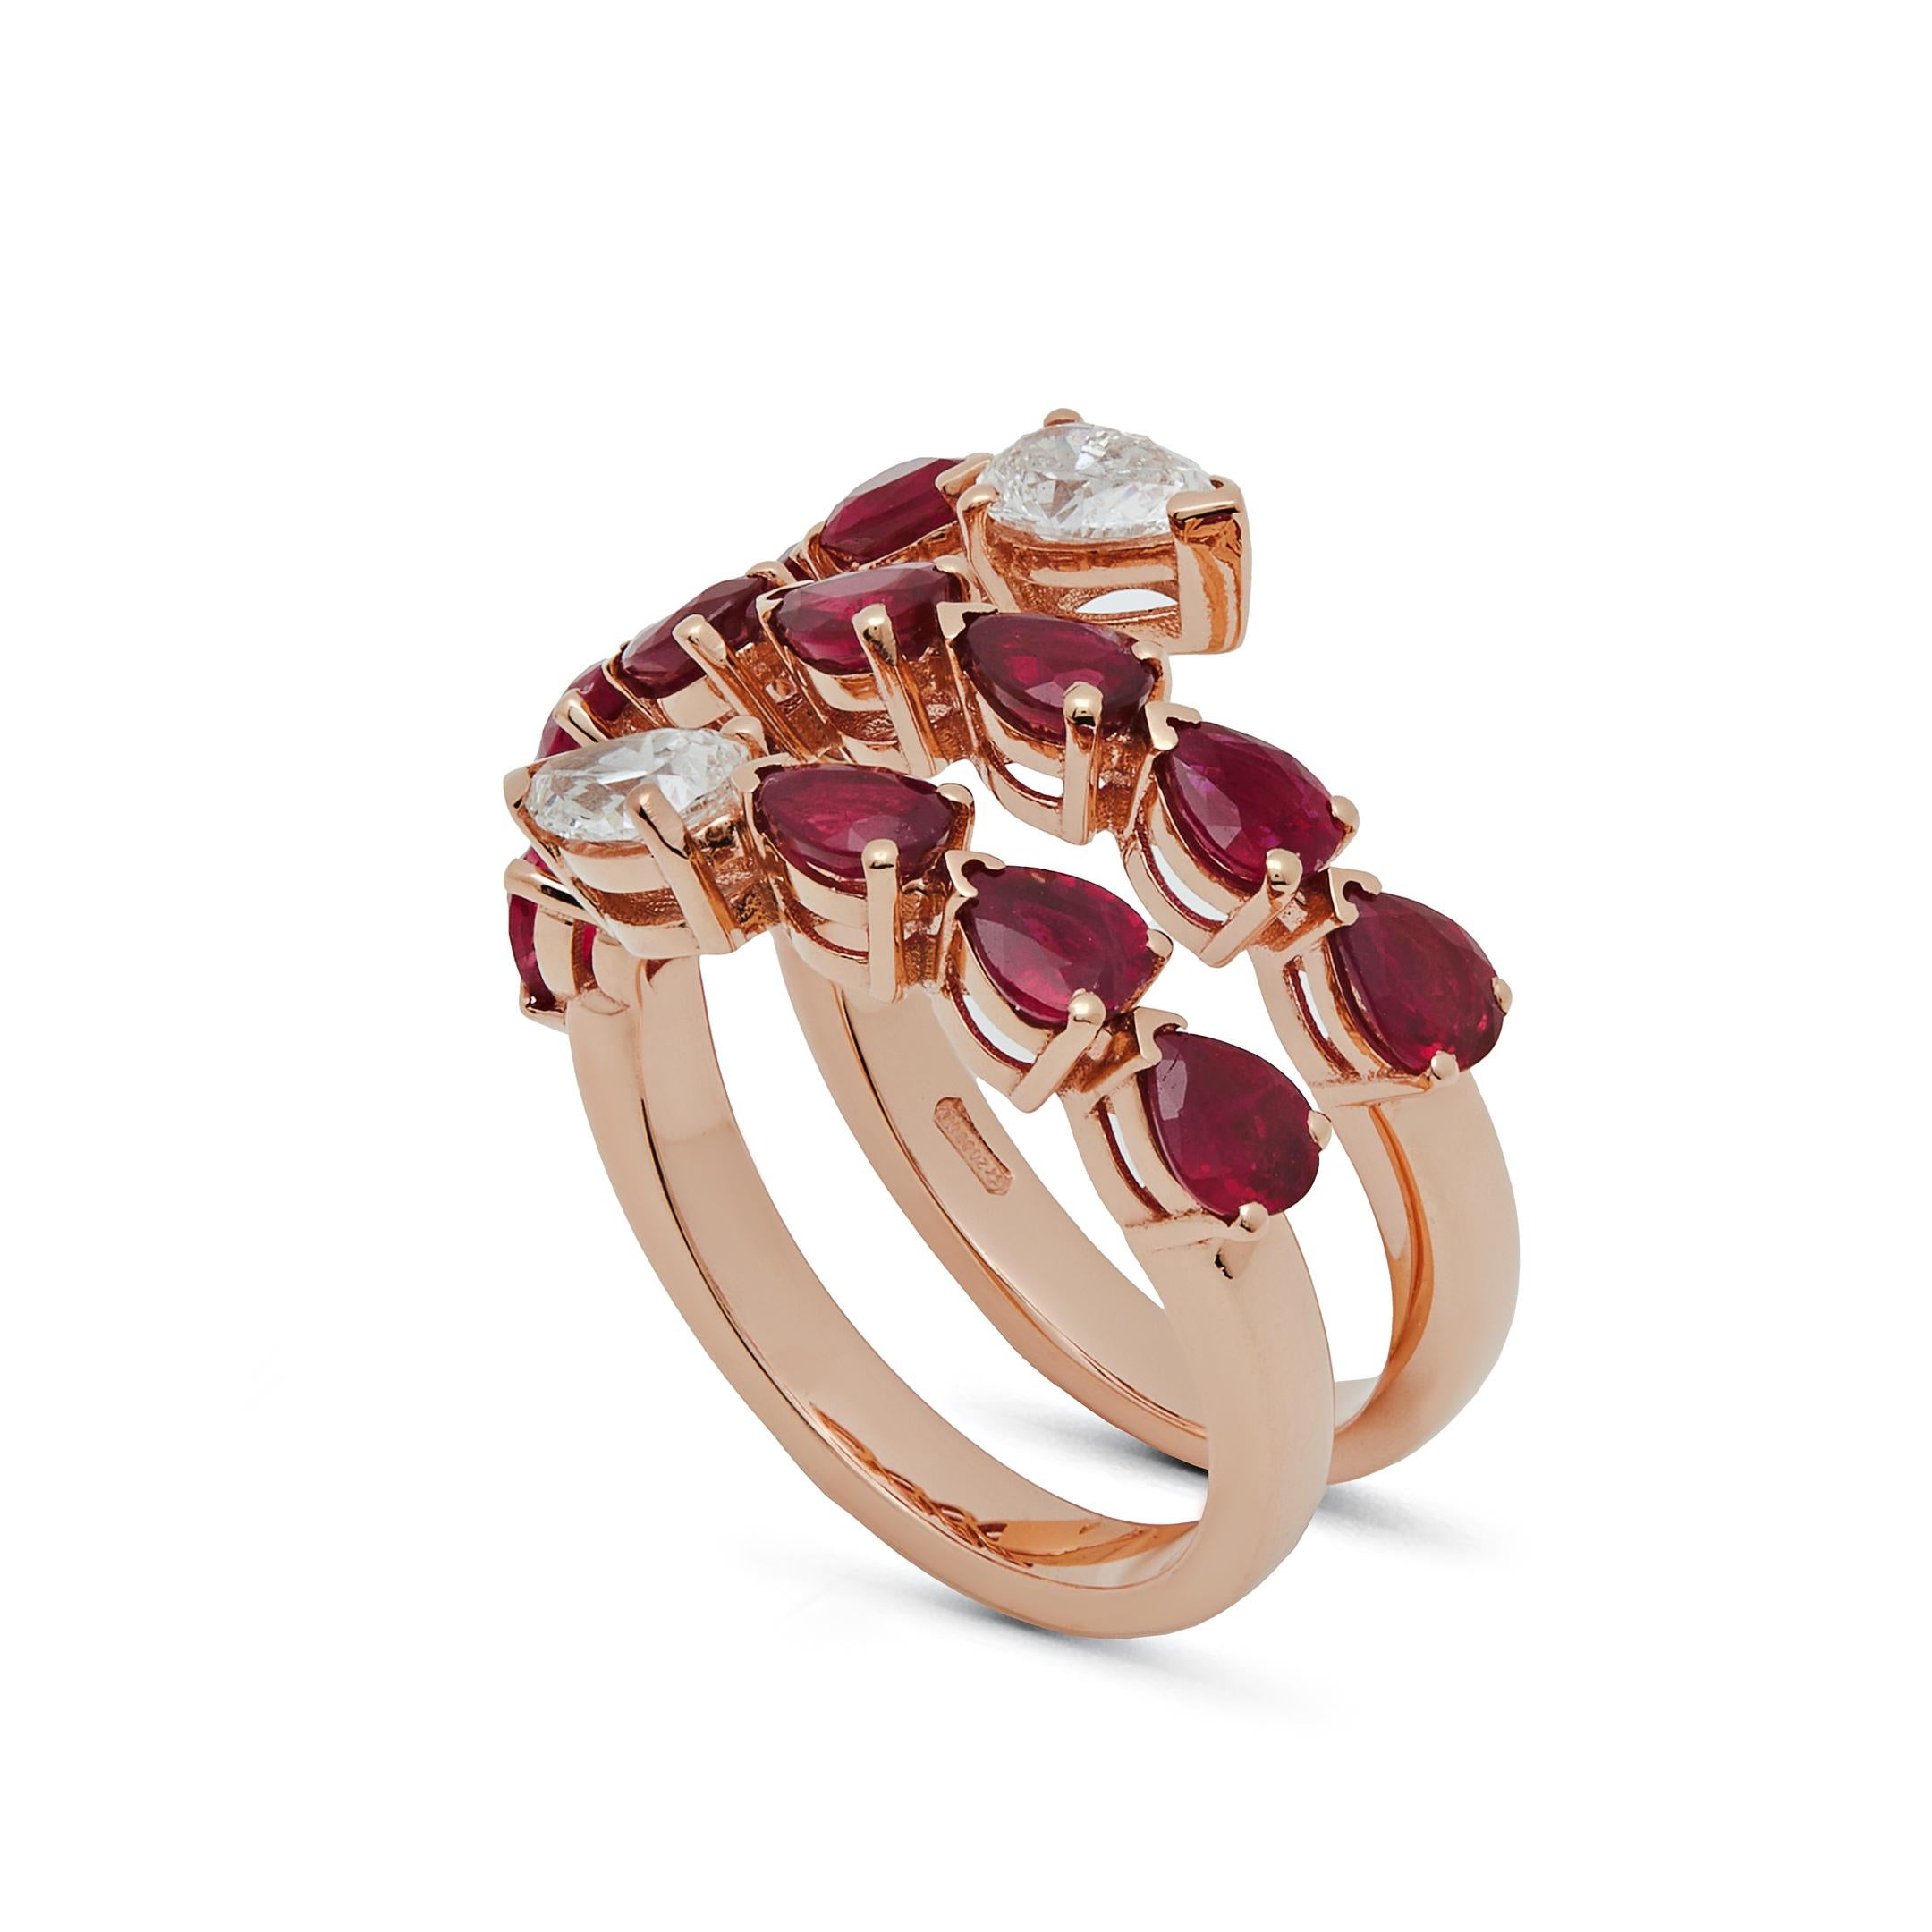 Drei Reihen glänzender Edelsteine bilden den überschwänglichen Rubin- und Diamantring Twist. Sinnliche birnenförmige Rubine kontrastieren mit klassischen weißen Diamanten, die alle in 18 Karat Roségold gefasst sind. Tragen Sie ihn mit Jeans, Heels